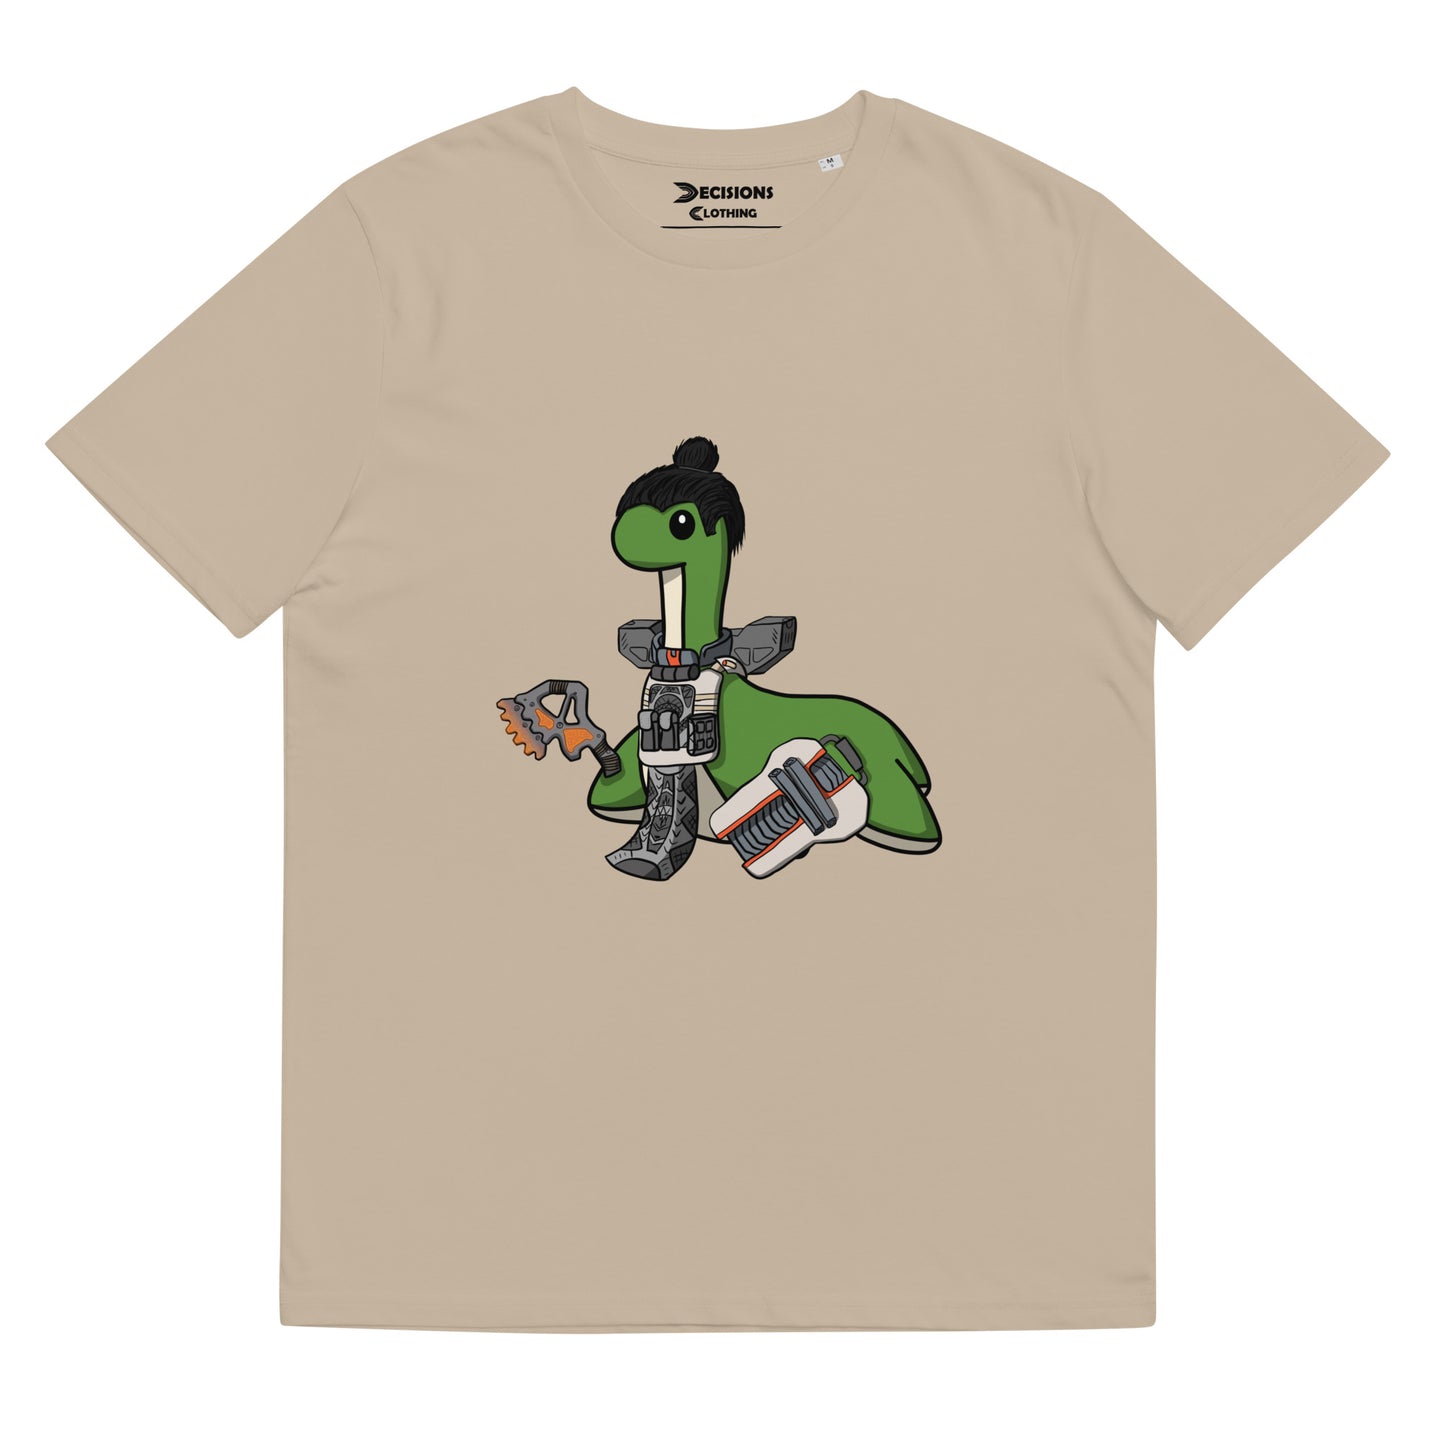 Gibraltar Nessie T-Shirt (Apex Legends)